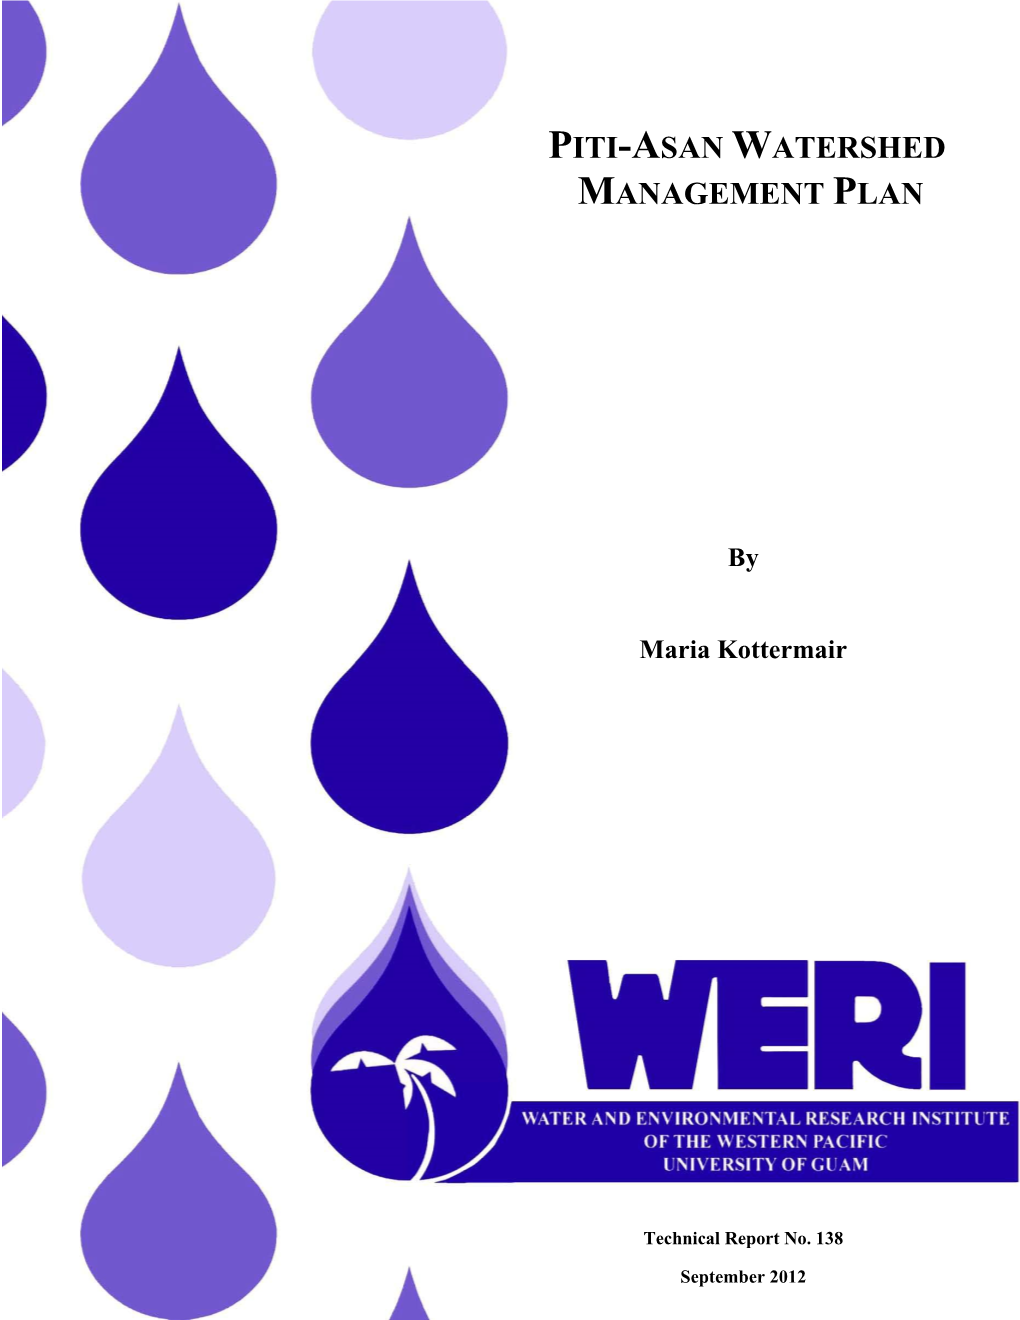 Piti-Asan Watershed Management Plan